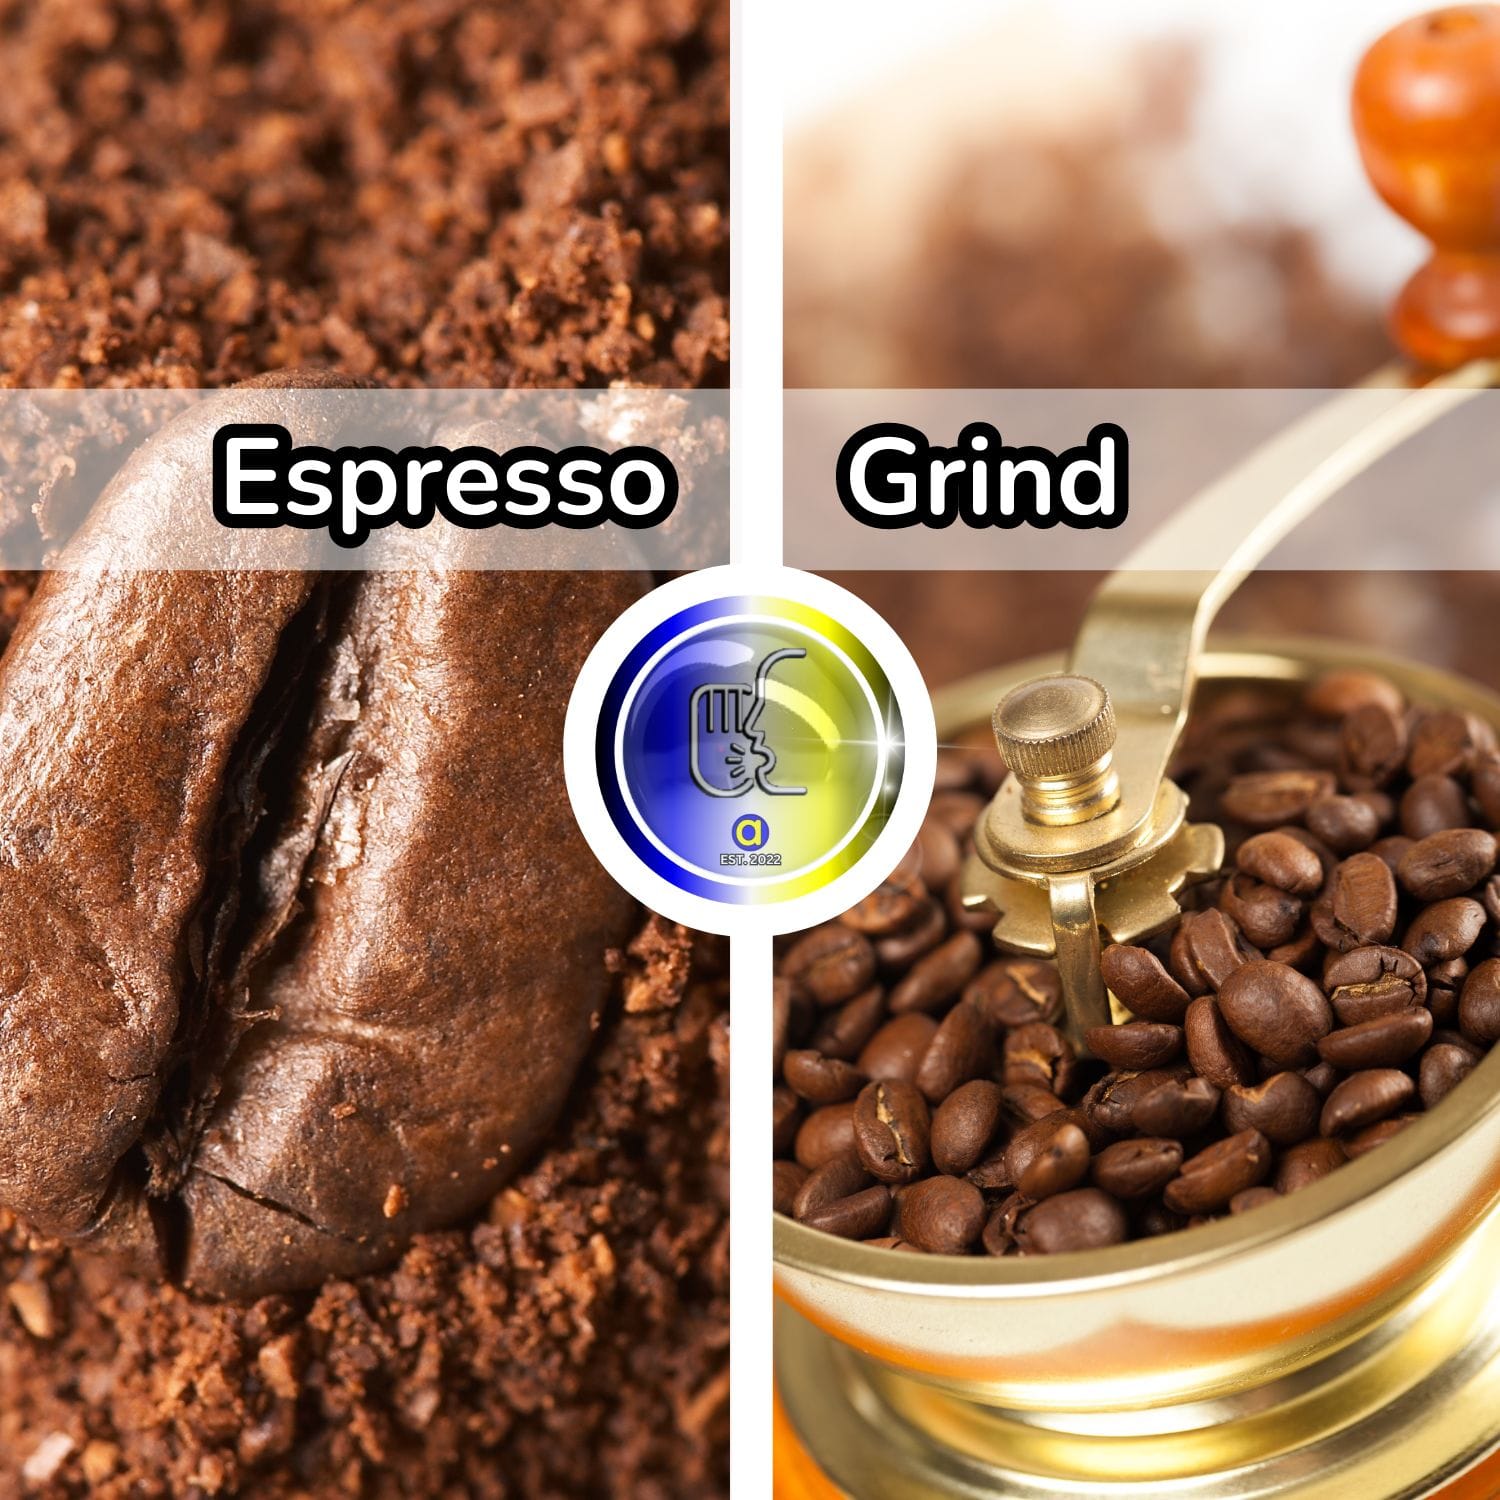 Does a Finer Grind Make Stronger Espresso